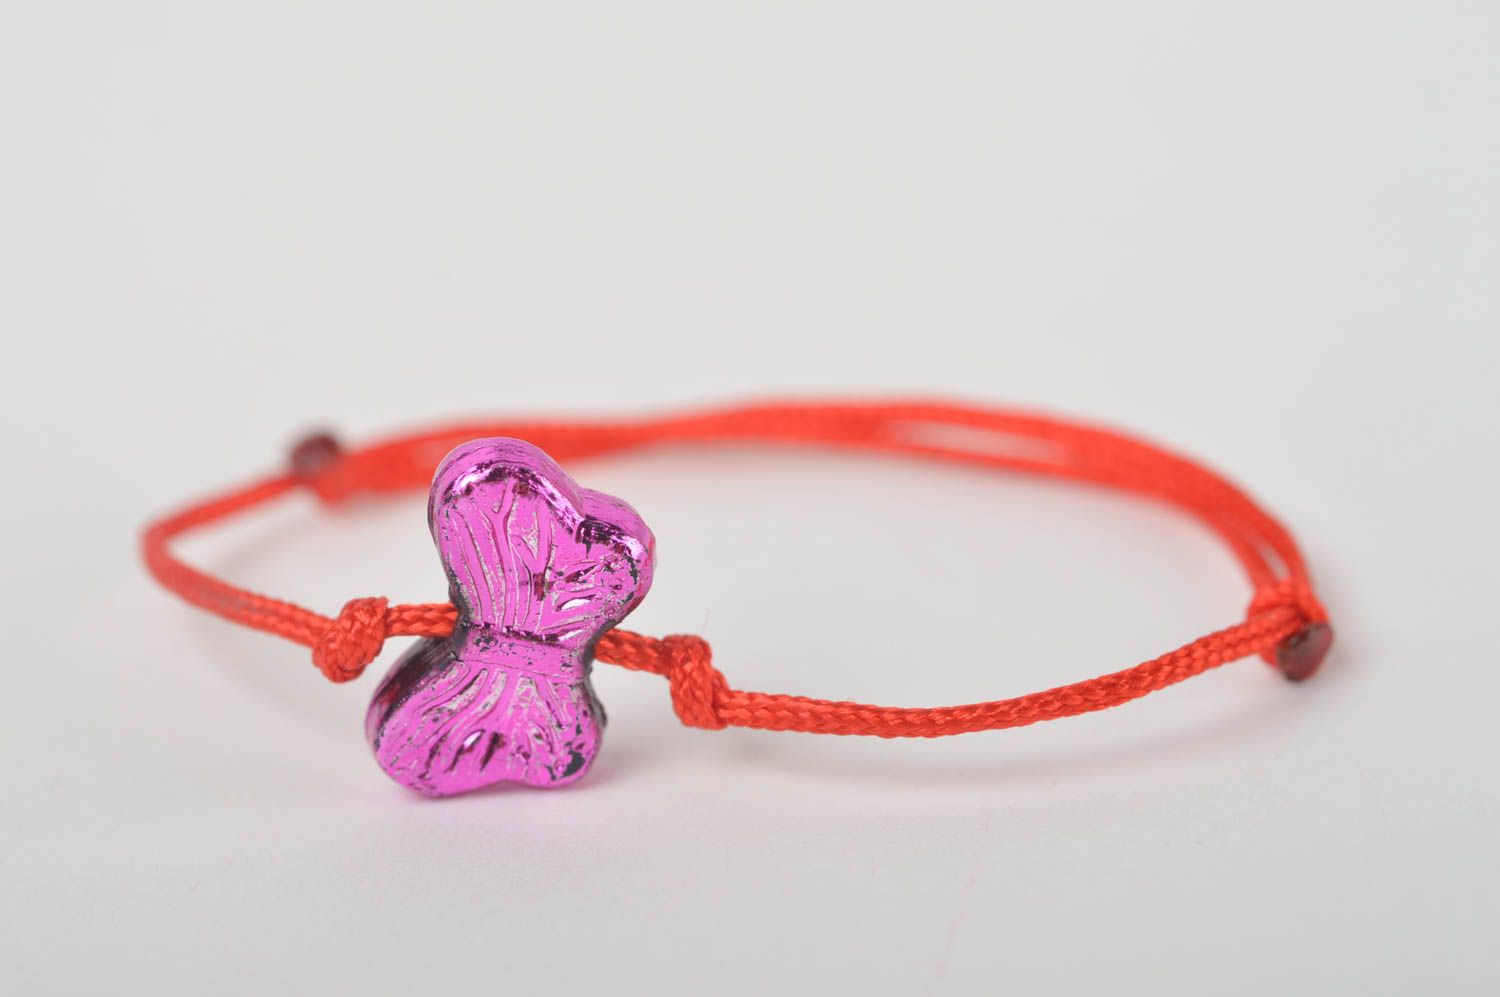 Textil Armband handgemacht Mode Schmuck in Rot wunderschön Geschenk für Mädchen foto 3